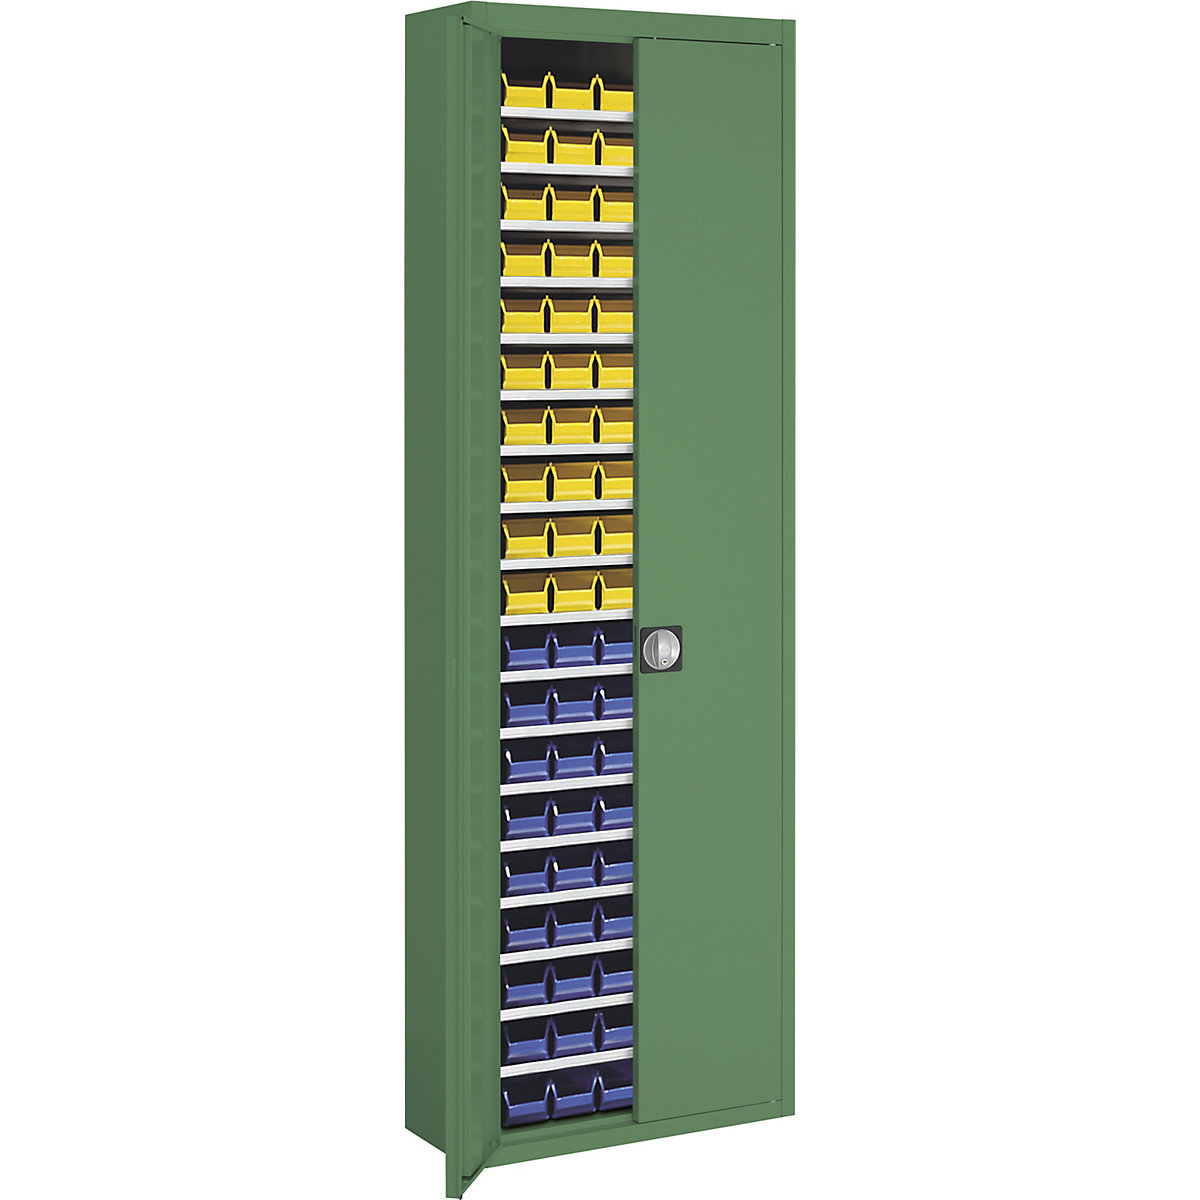 Raktári szekrény nyitott tárolódobozokkal – mauser, ma x szé x mé 2150 x 680 x 280 mm, egyszínű, zöld, 114 doboz-1